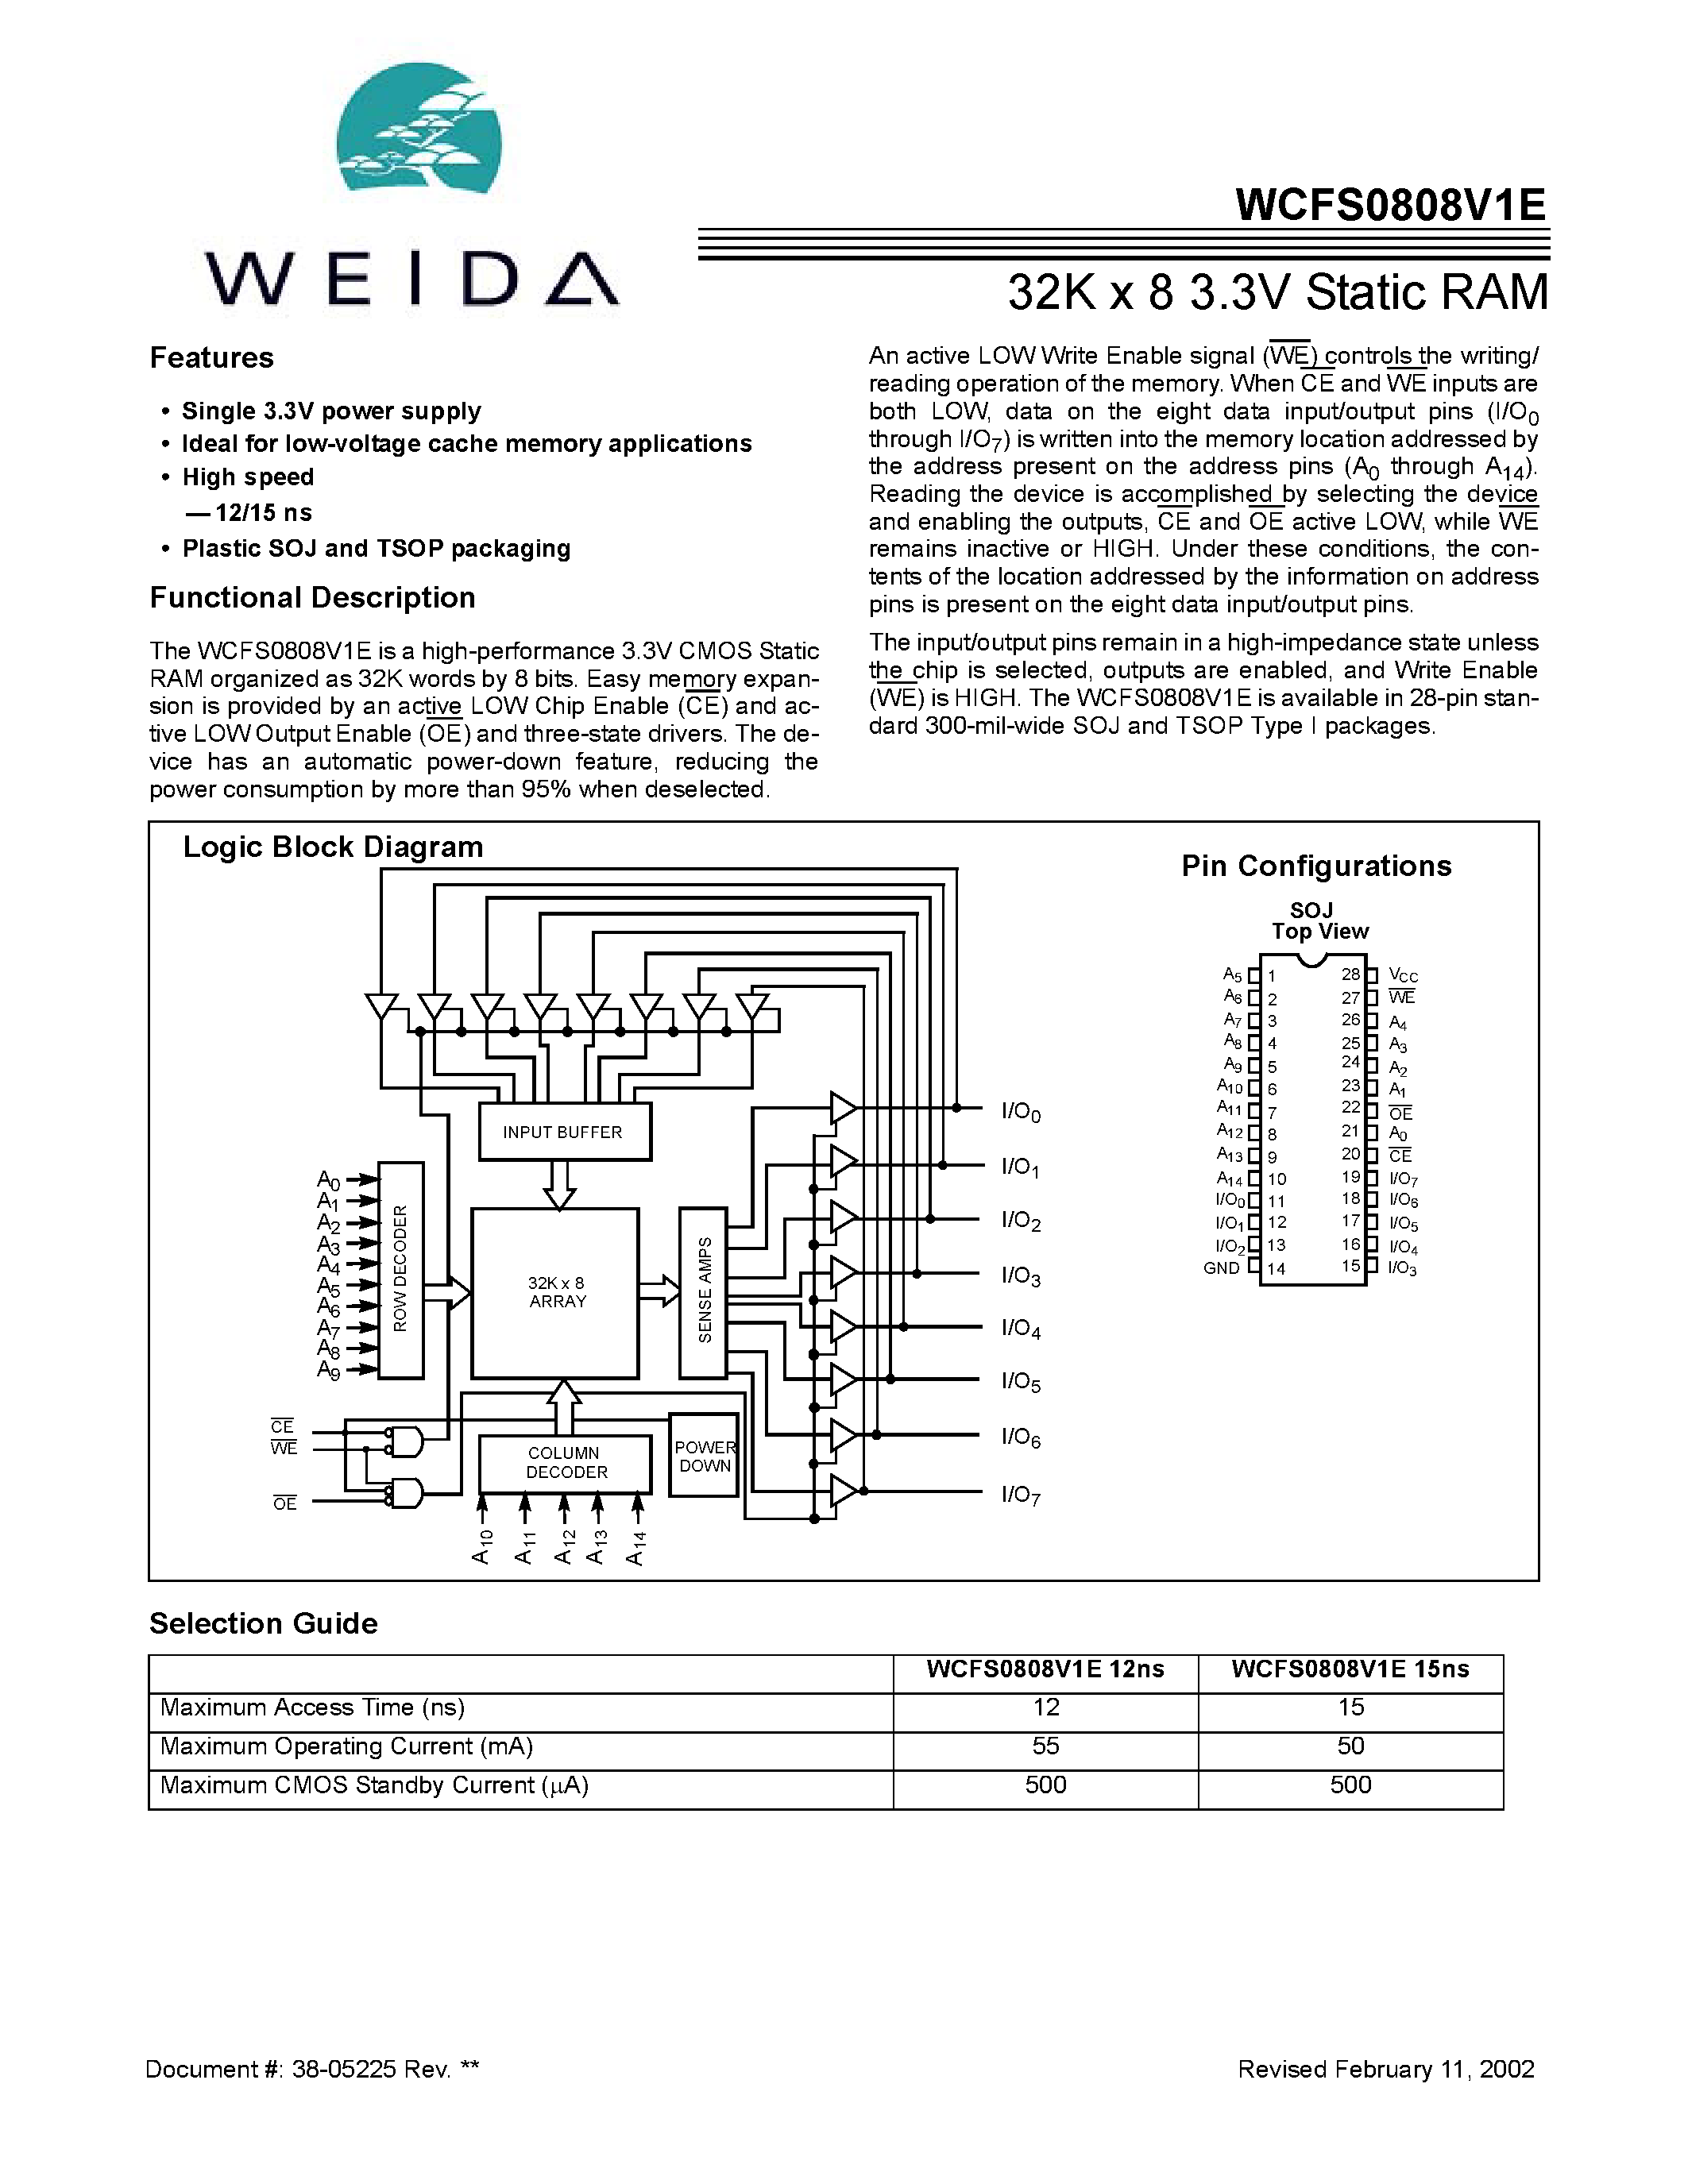 Даташит WCFS0808V1E - 32K x 8 3.3V Static RAM страница 1